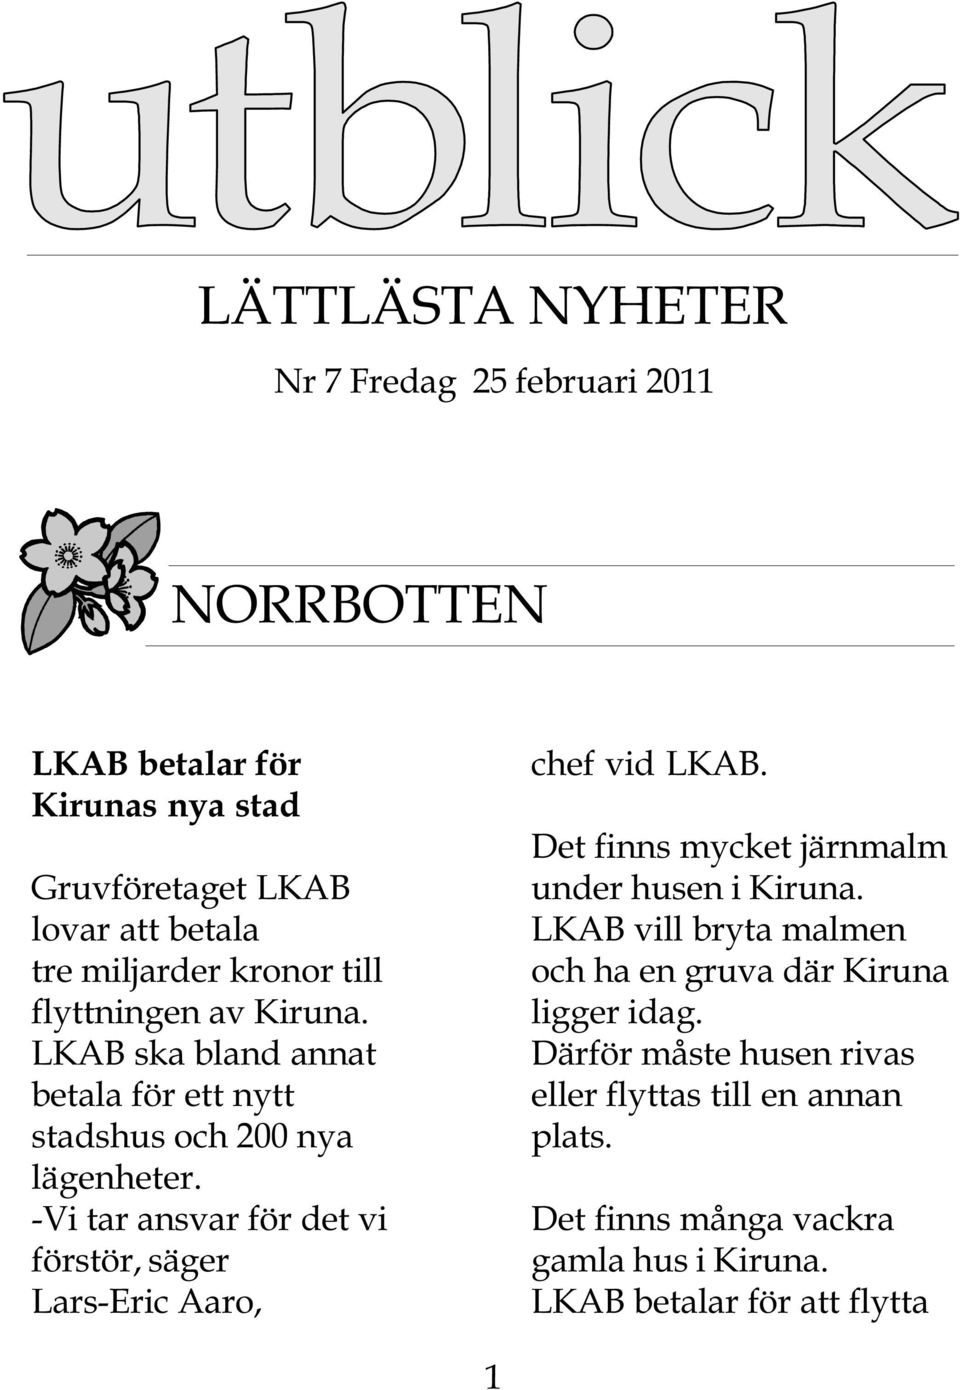 -Vi tar ansvar för det vi förstör, säger Lars-Eric Aaro, chef vid LKAB. Det finns mycket järnmalm under husen i Kiruna.